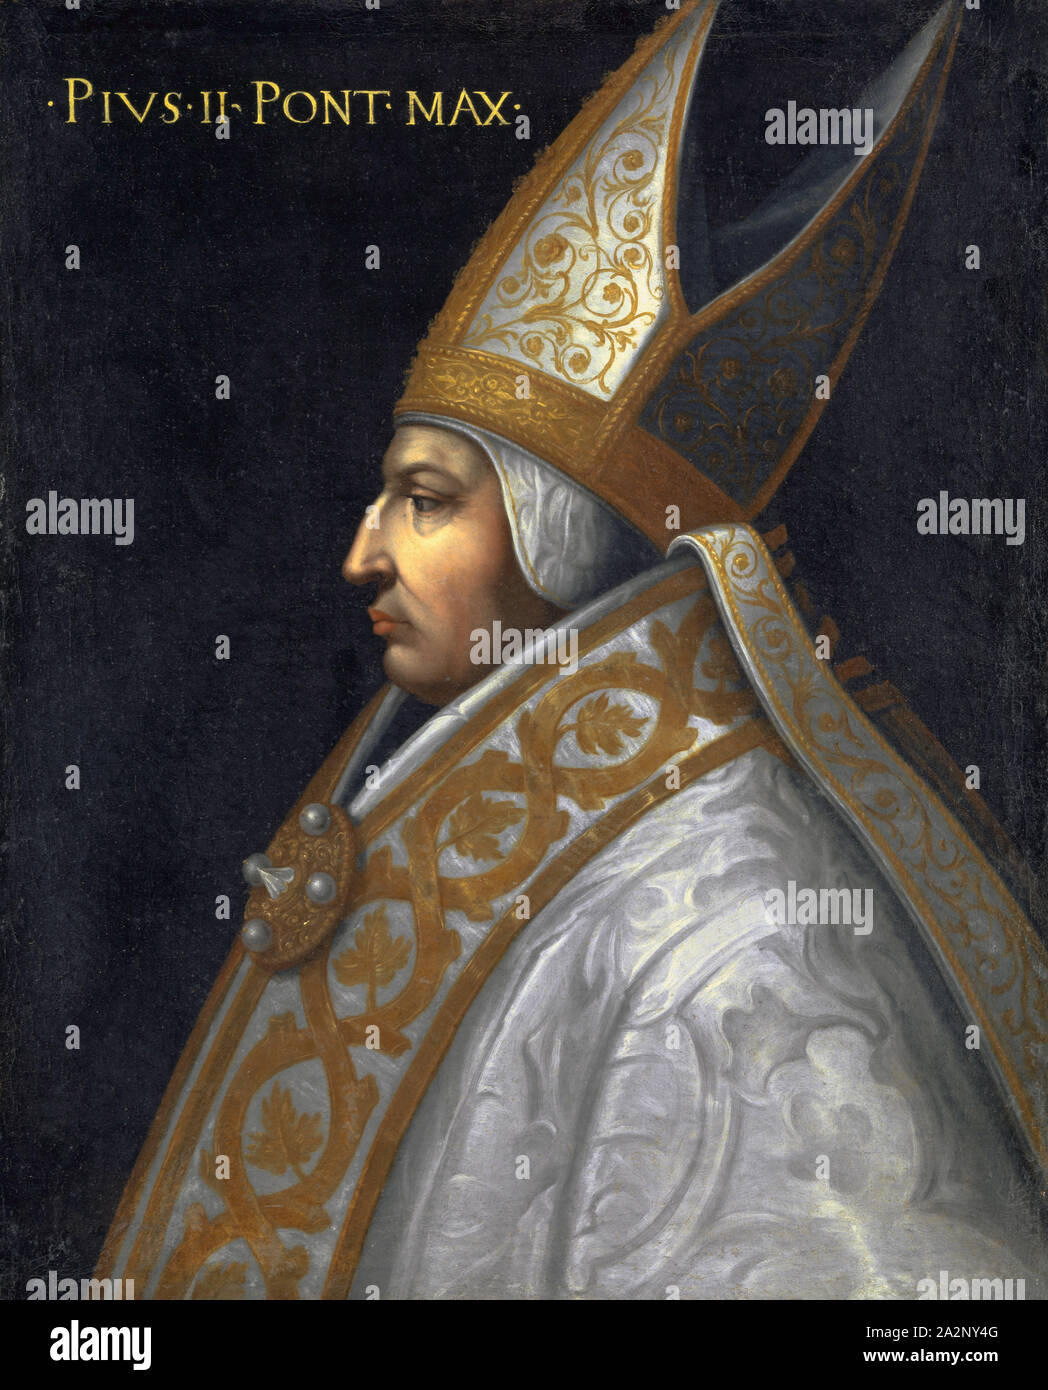 Ritratto di papa Pio II (Enea Silvio Piccolomini), olio su tela 77,5 x 64,5 cm, unsigned, in alto a sinistra: • PIVS • II • PONT • MAX •, Cristofano (di Papi) dell' altissimo, (Kopie nach / copia dopo), um 1525-1605 Florenz Foto Stock